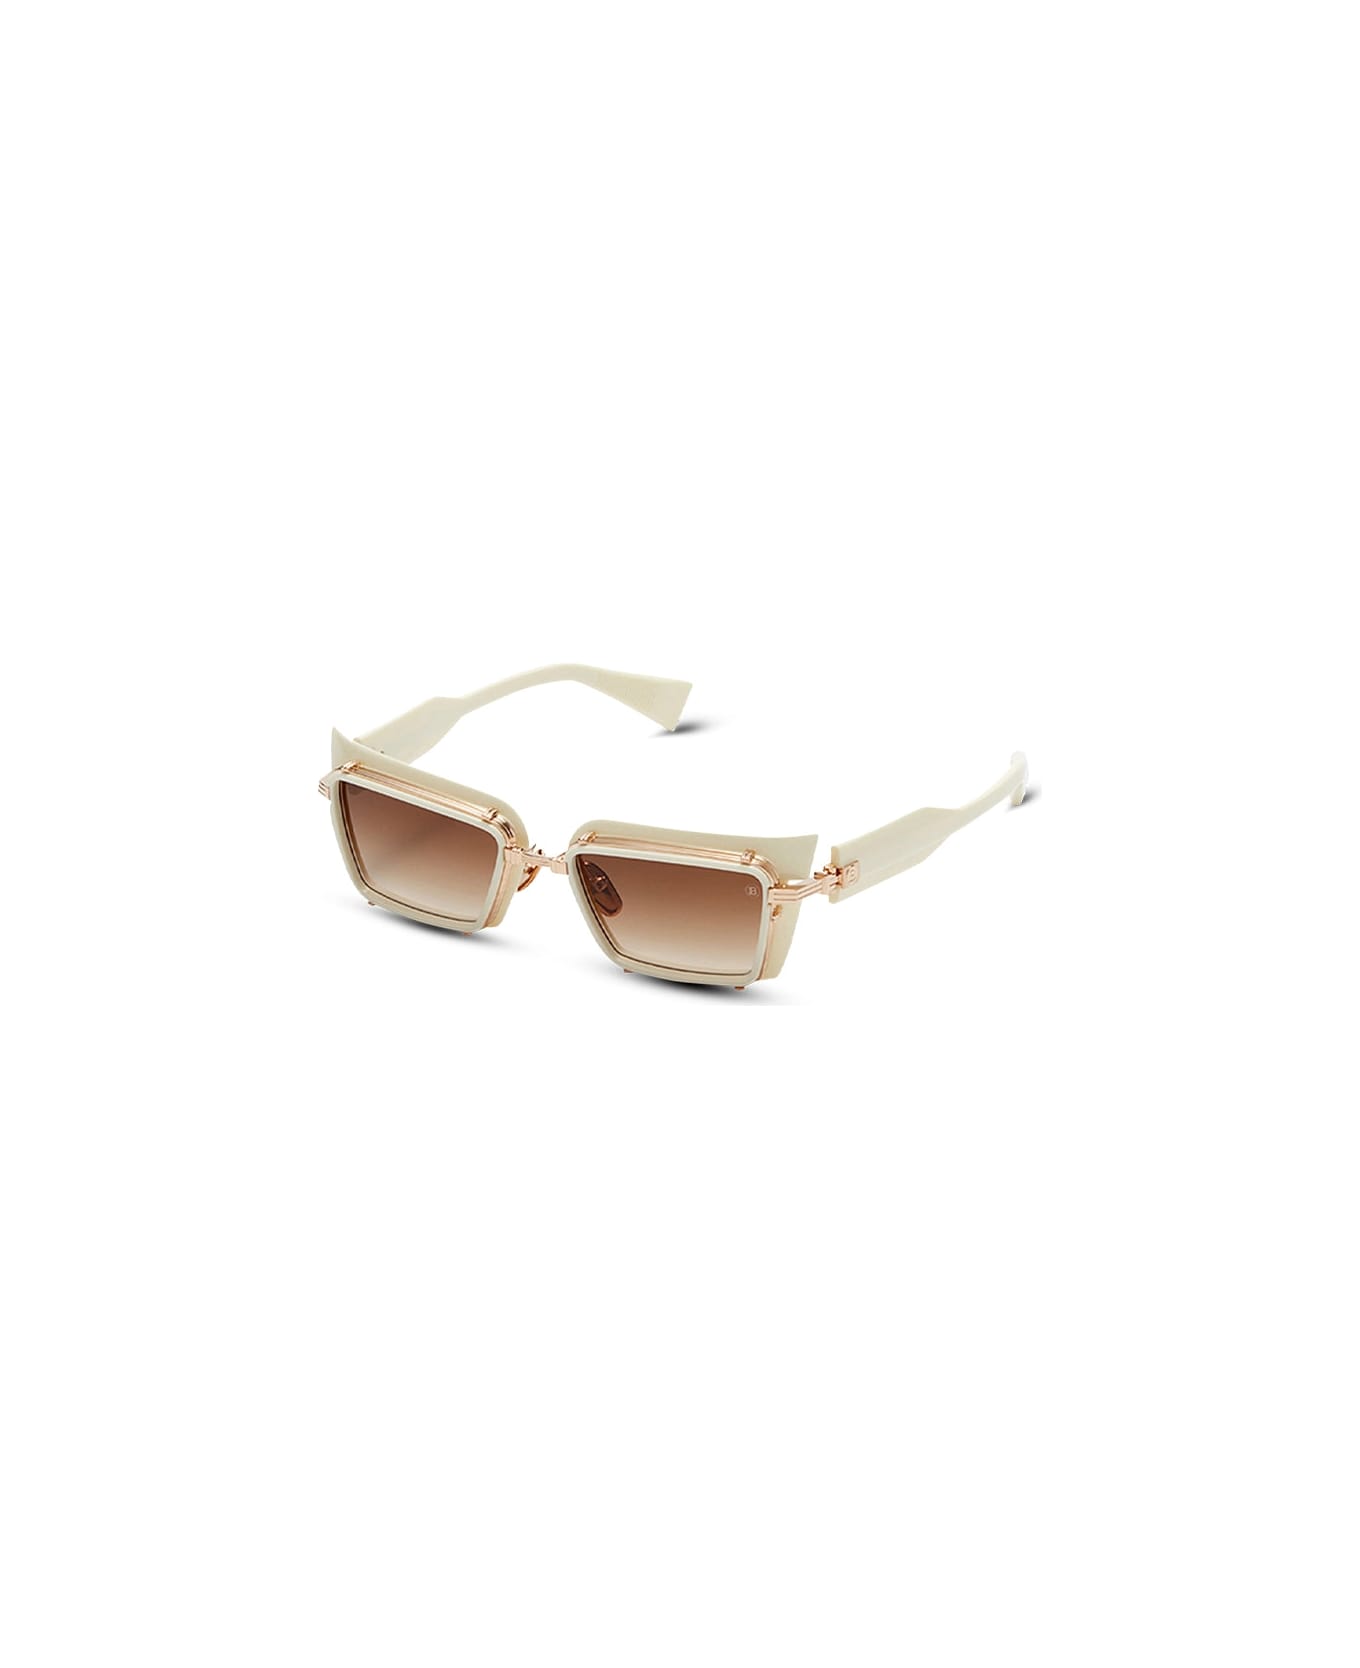 Balmain Admirable - White / Gold Sunglasses Les Sunglasses Les - gold, white